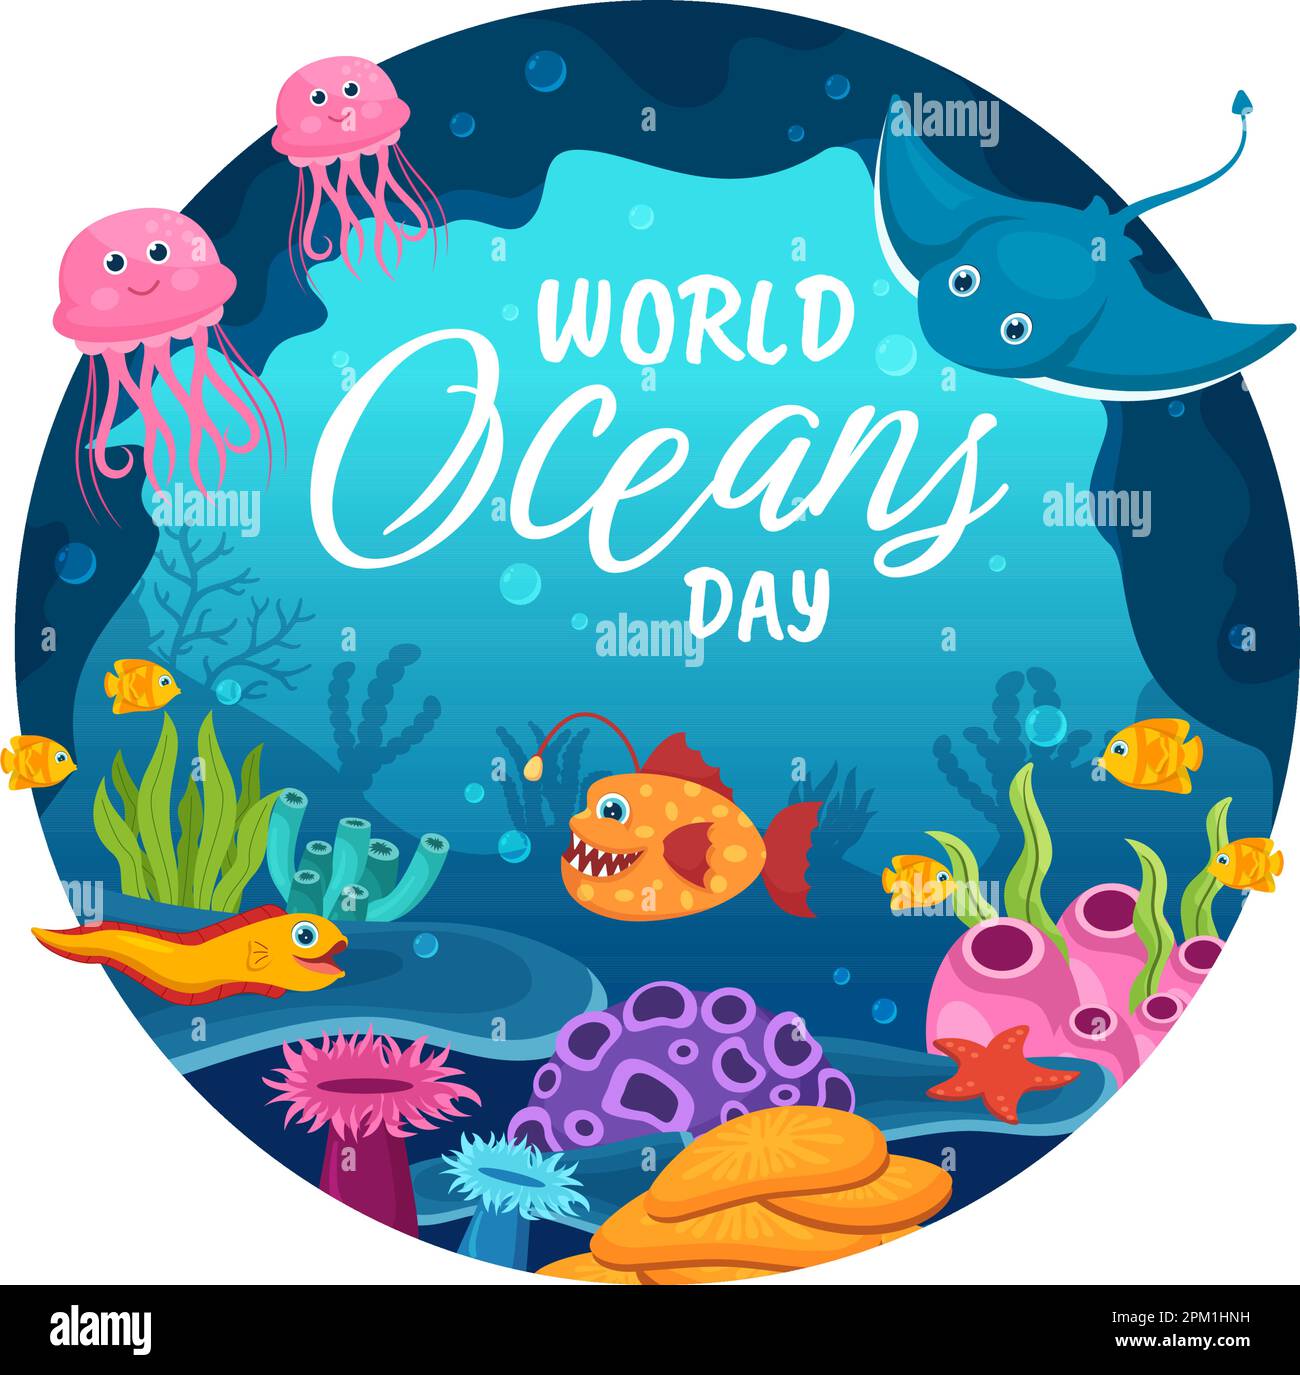 Illustration zum Weltmeertag zum Schutz und Erhalt von Ozean-, Fisch-, Ökosystem- oder Meerespflanzen in flachen Cartoons, handgezeichnet für Landing-Page-Vorlagen Stock Vektor